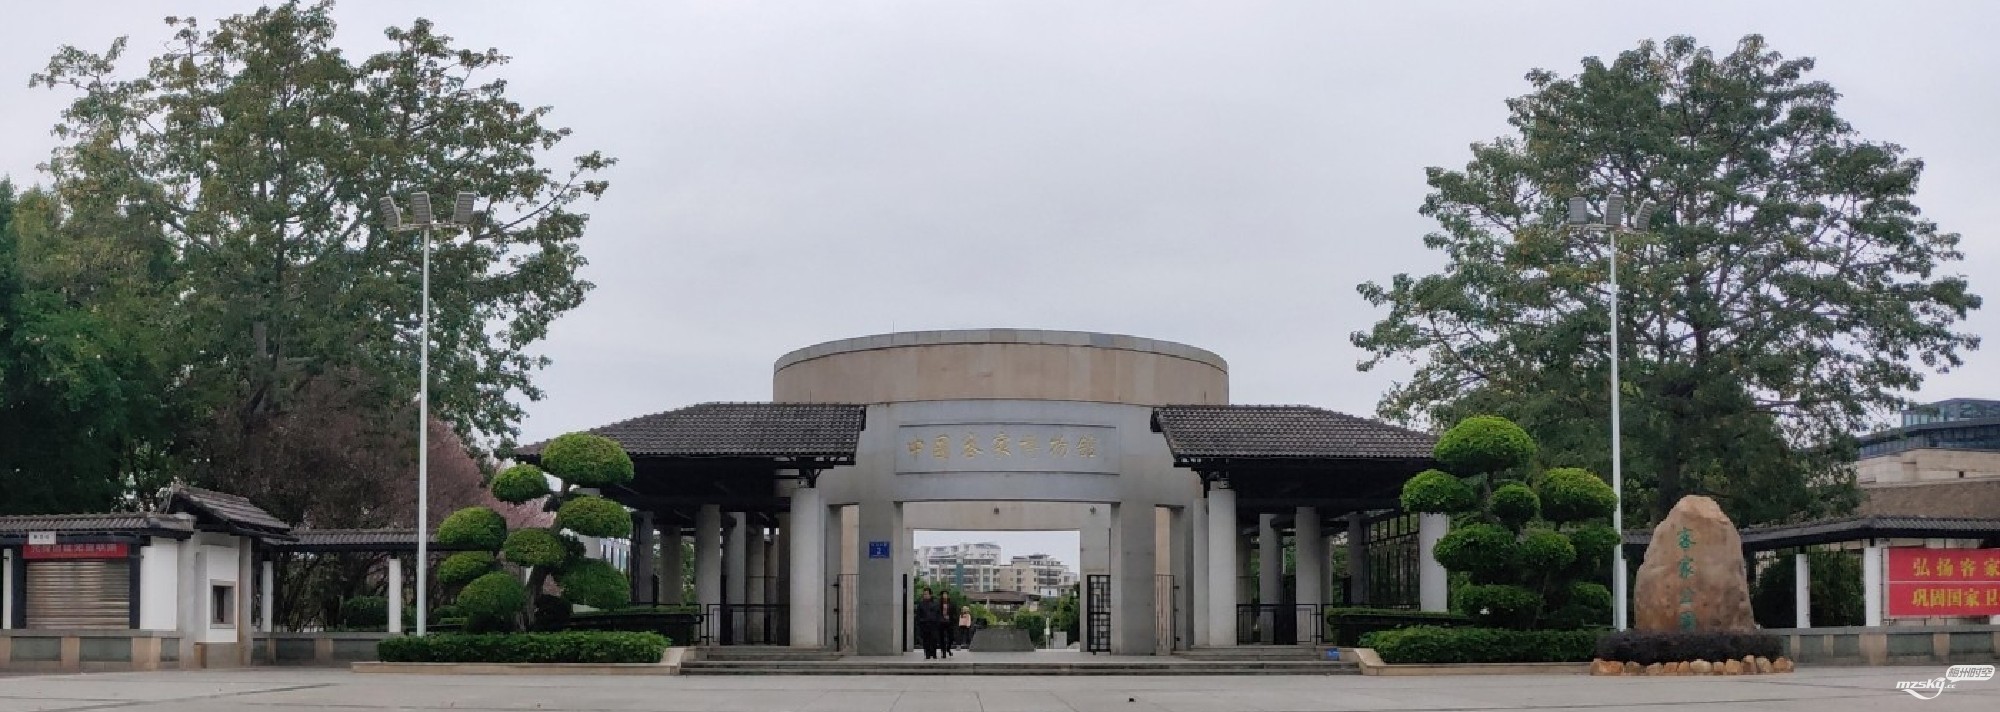 中国客家博物馆广场